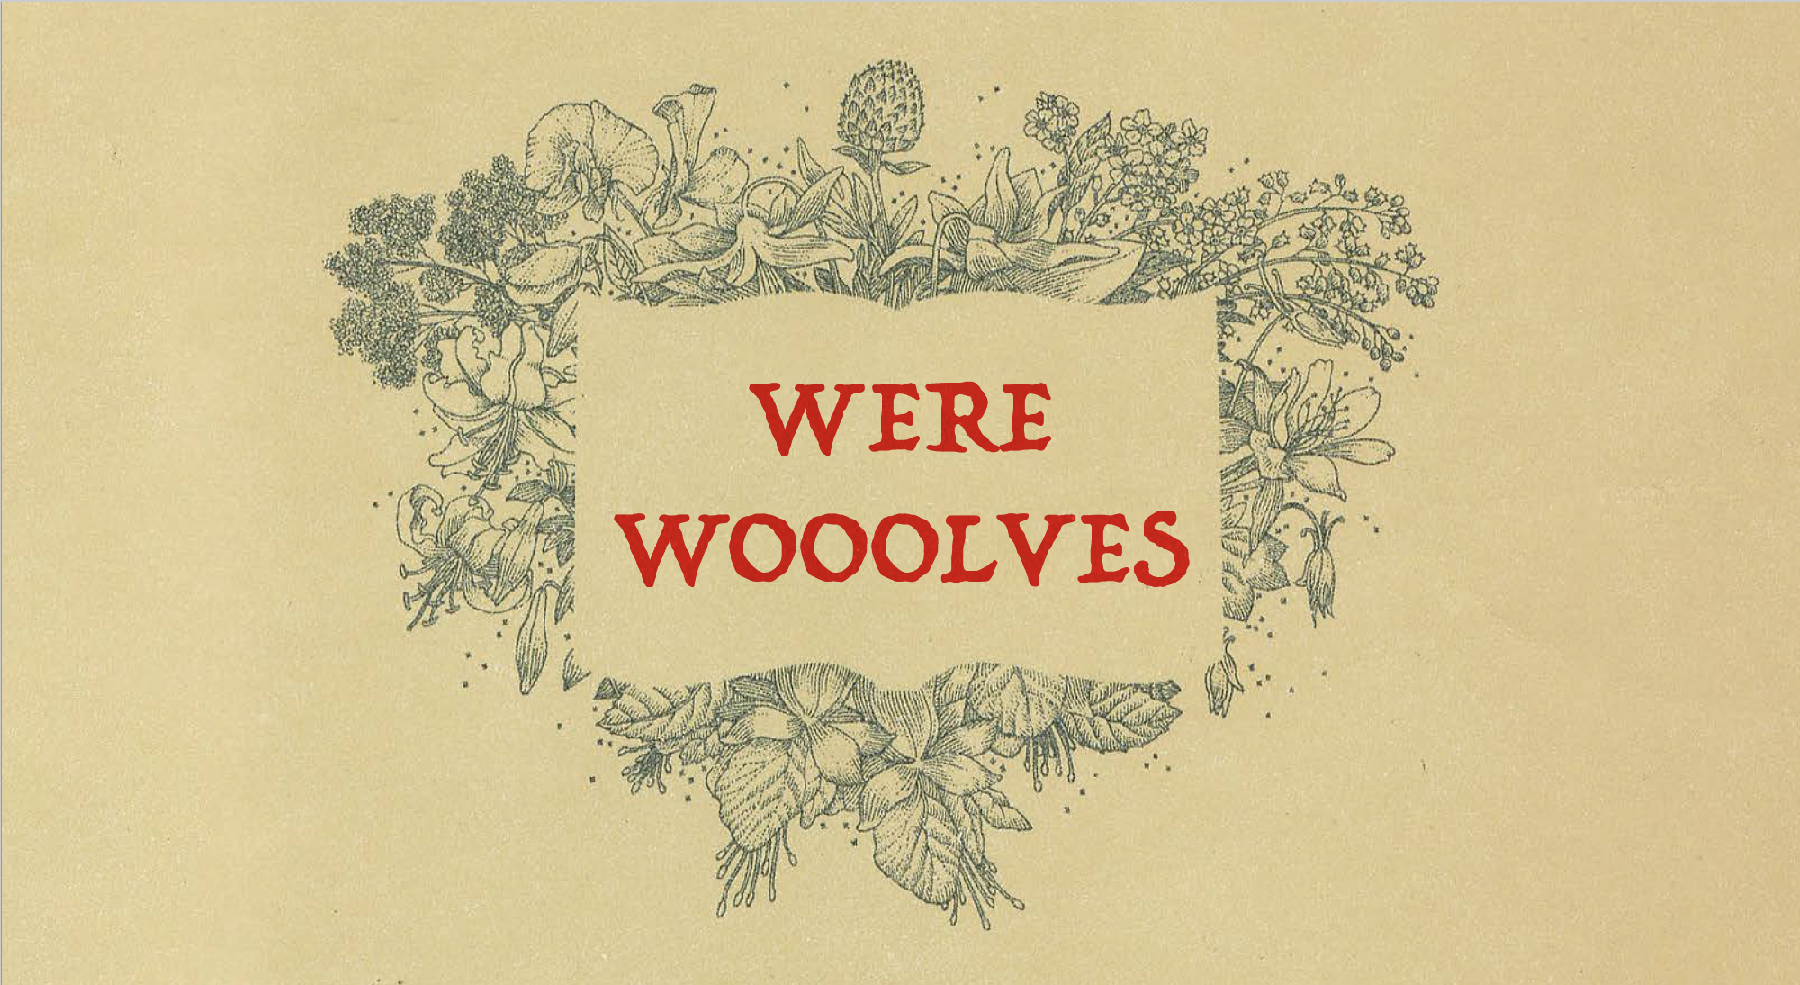 Werewooolves